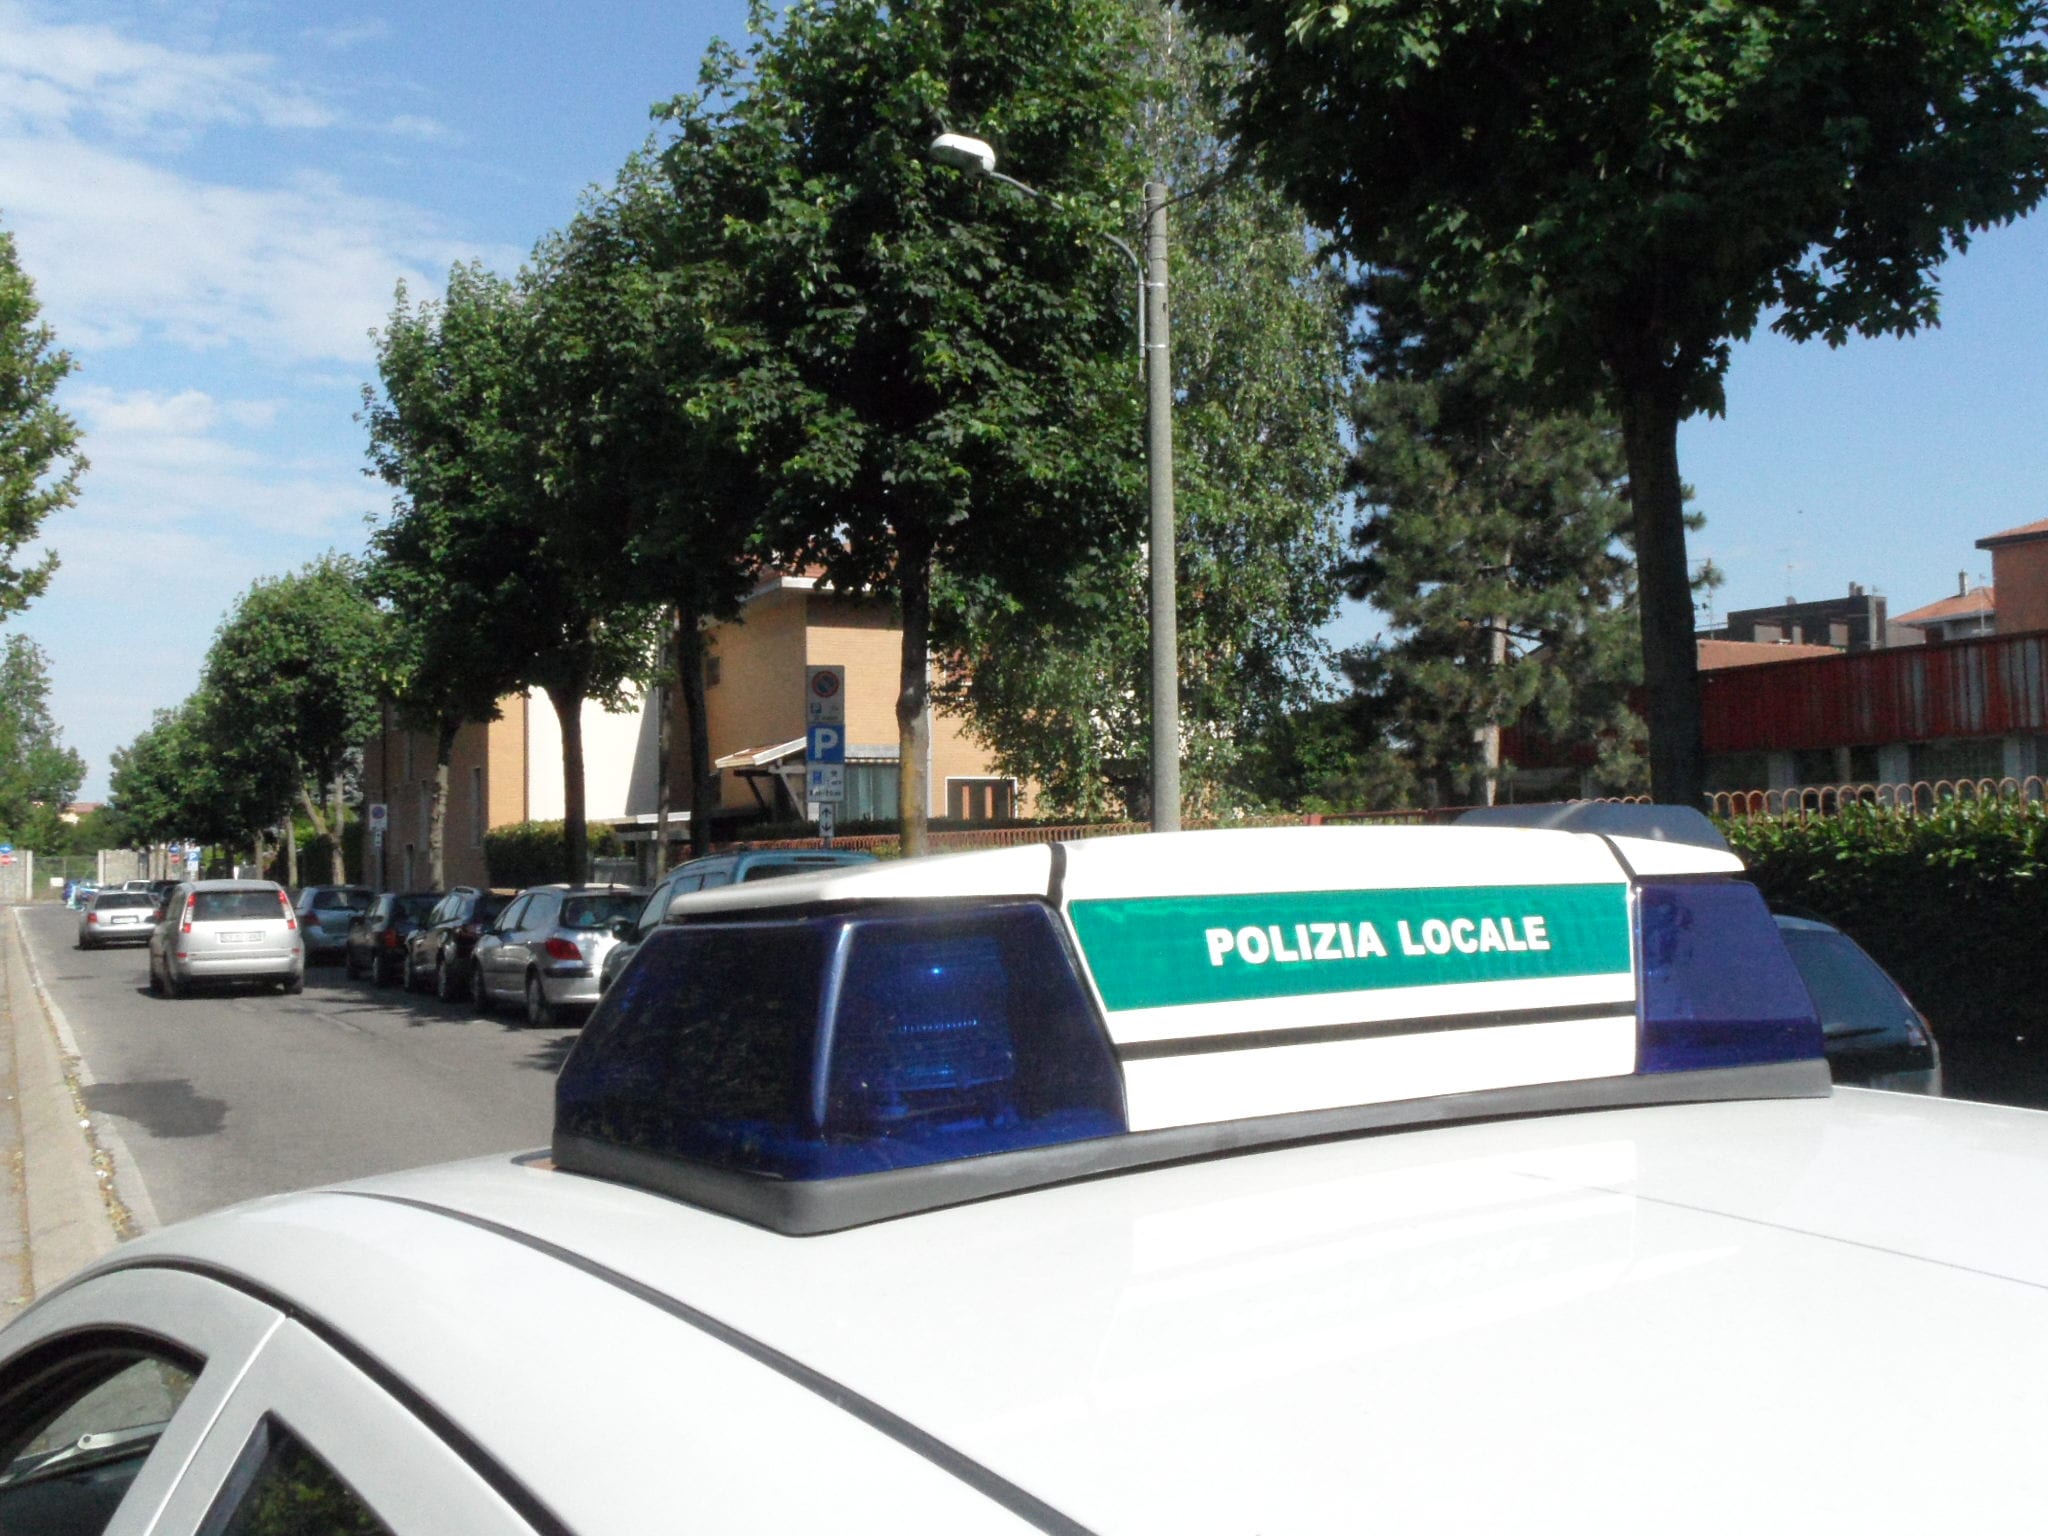 La polizia locale fa abbassare i decibel alla scuola materna